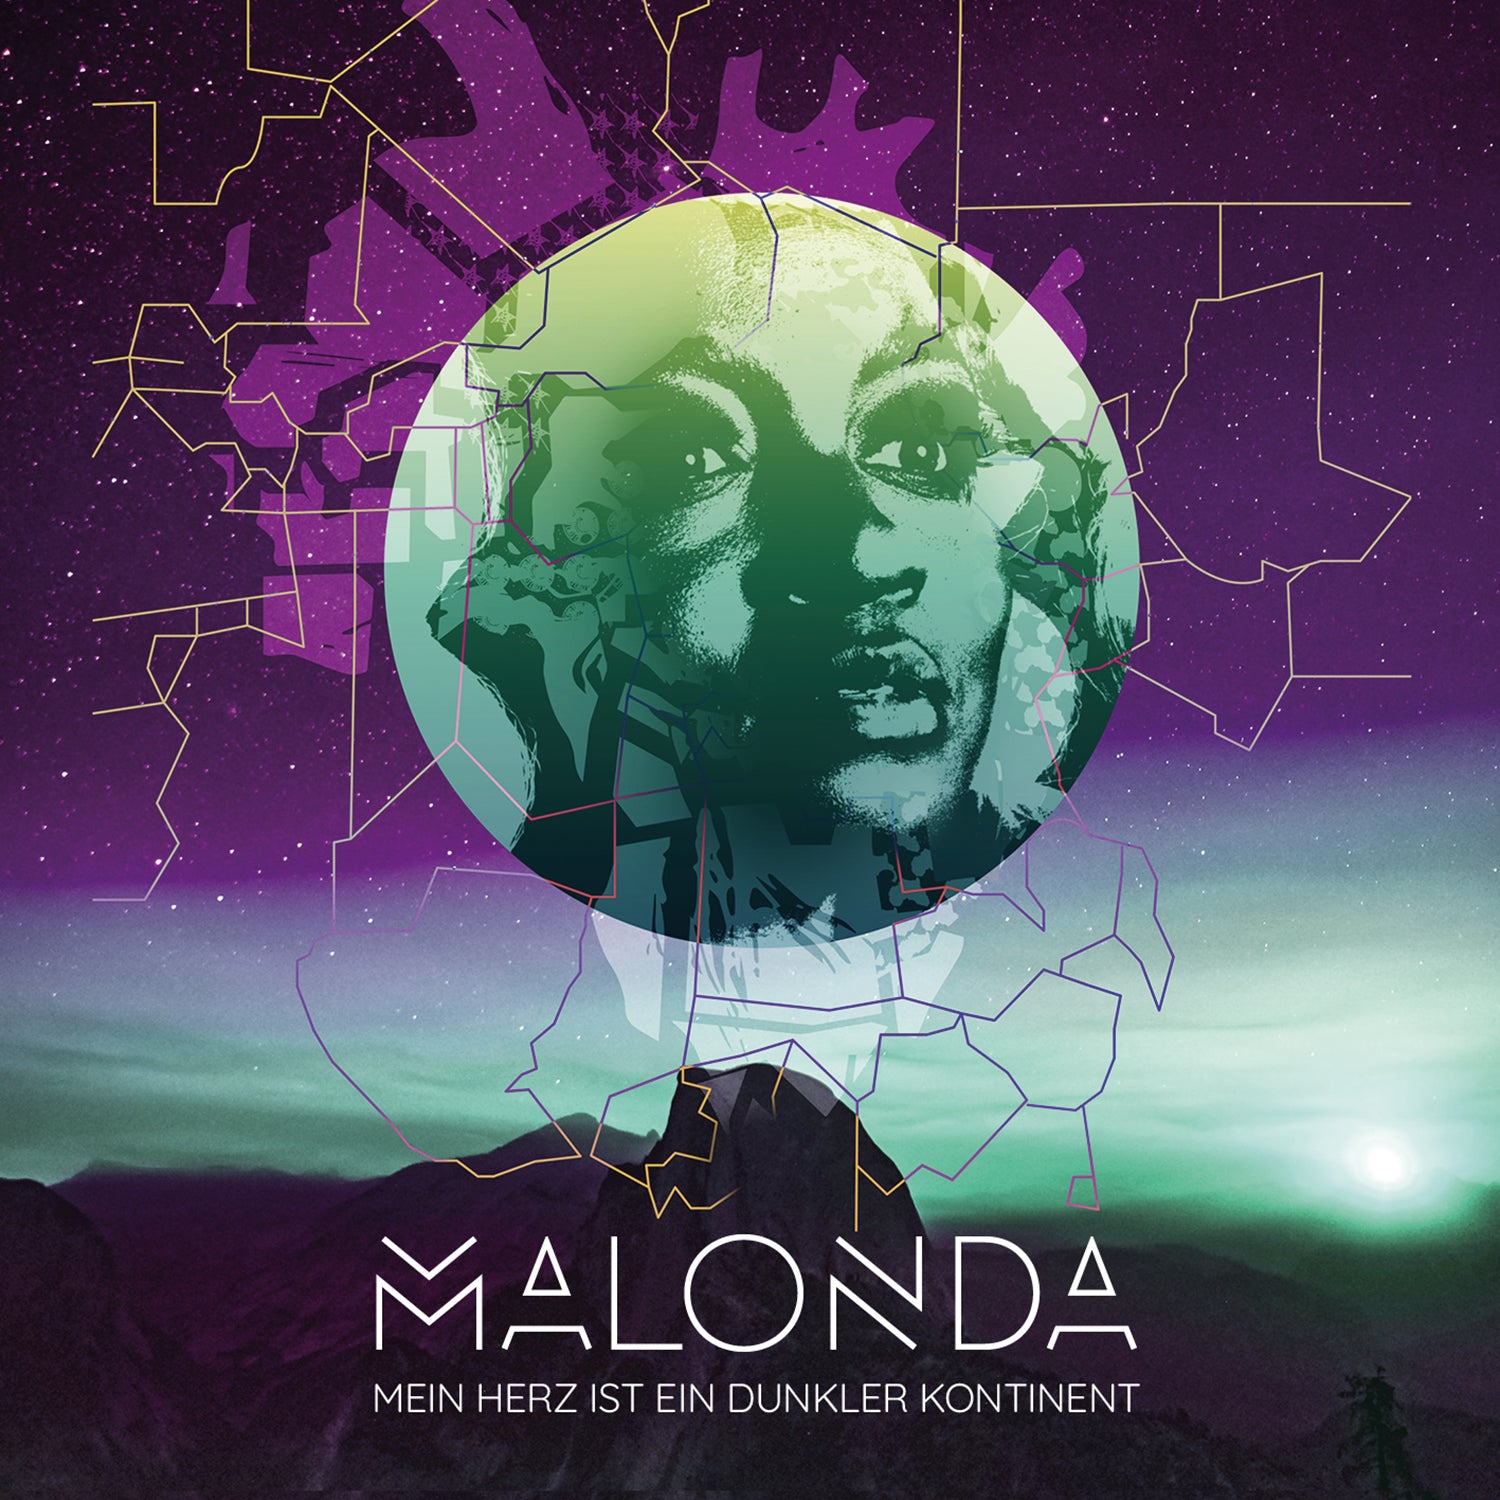 Malonda - Mein Herz ist ein dunkler Kontinent (CD)